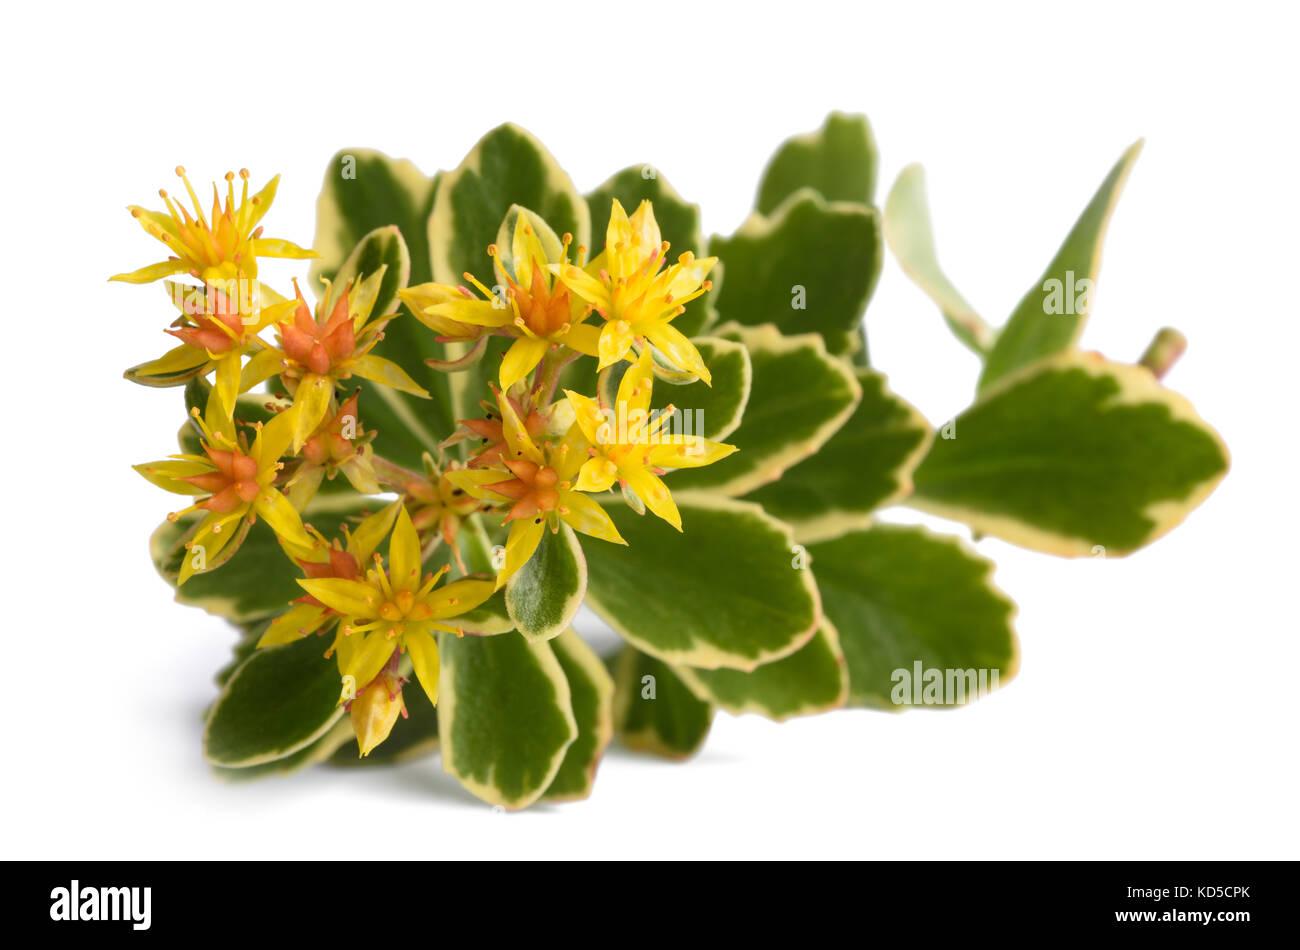 sedum kamtschaticum variegatum isolated on white background Stock Photo